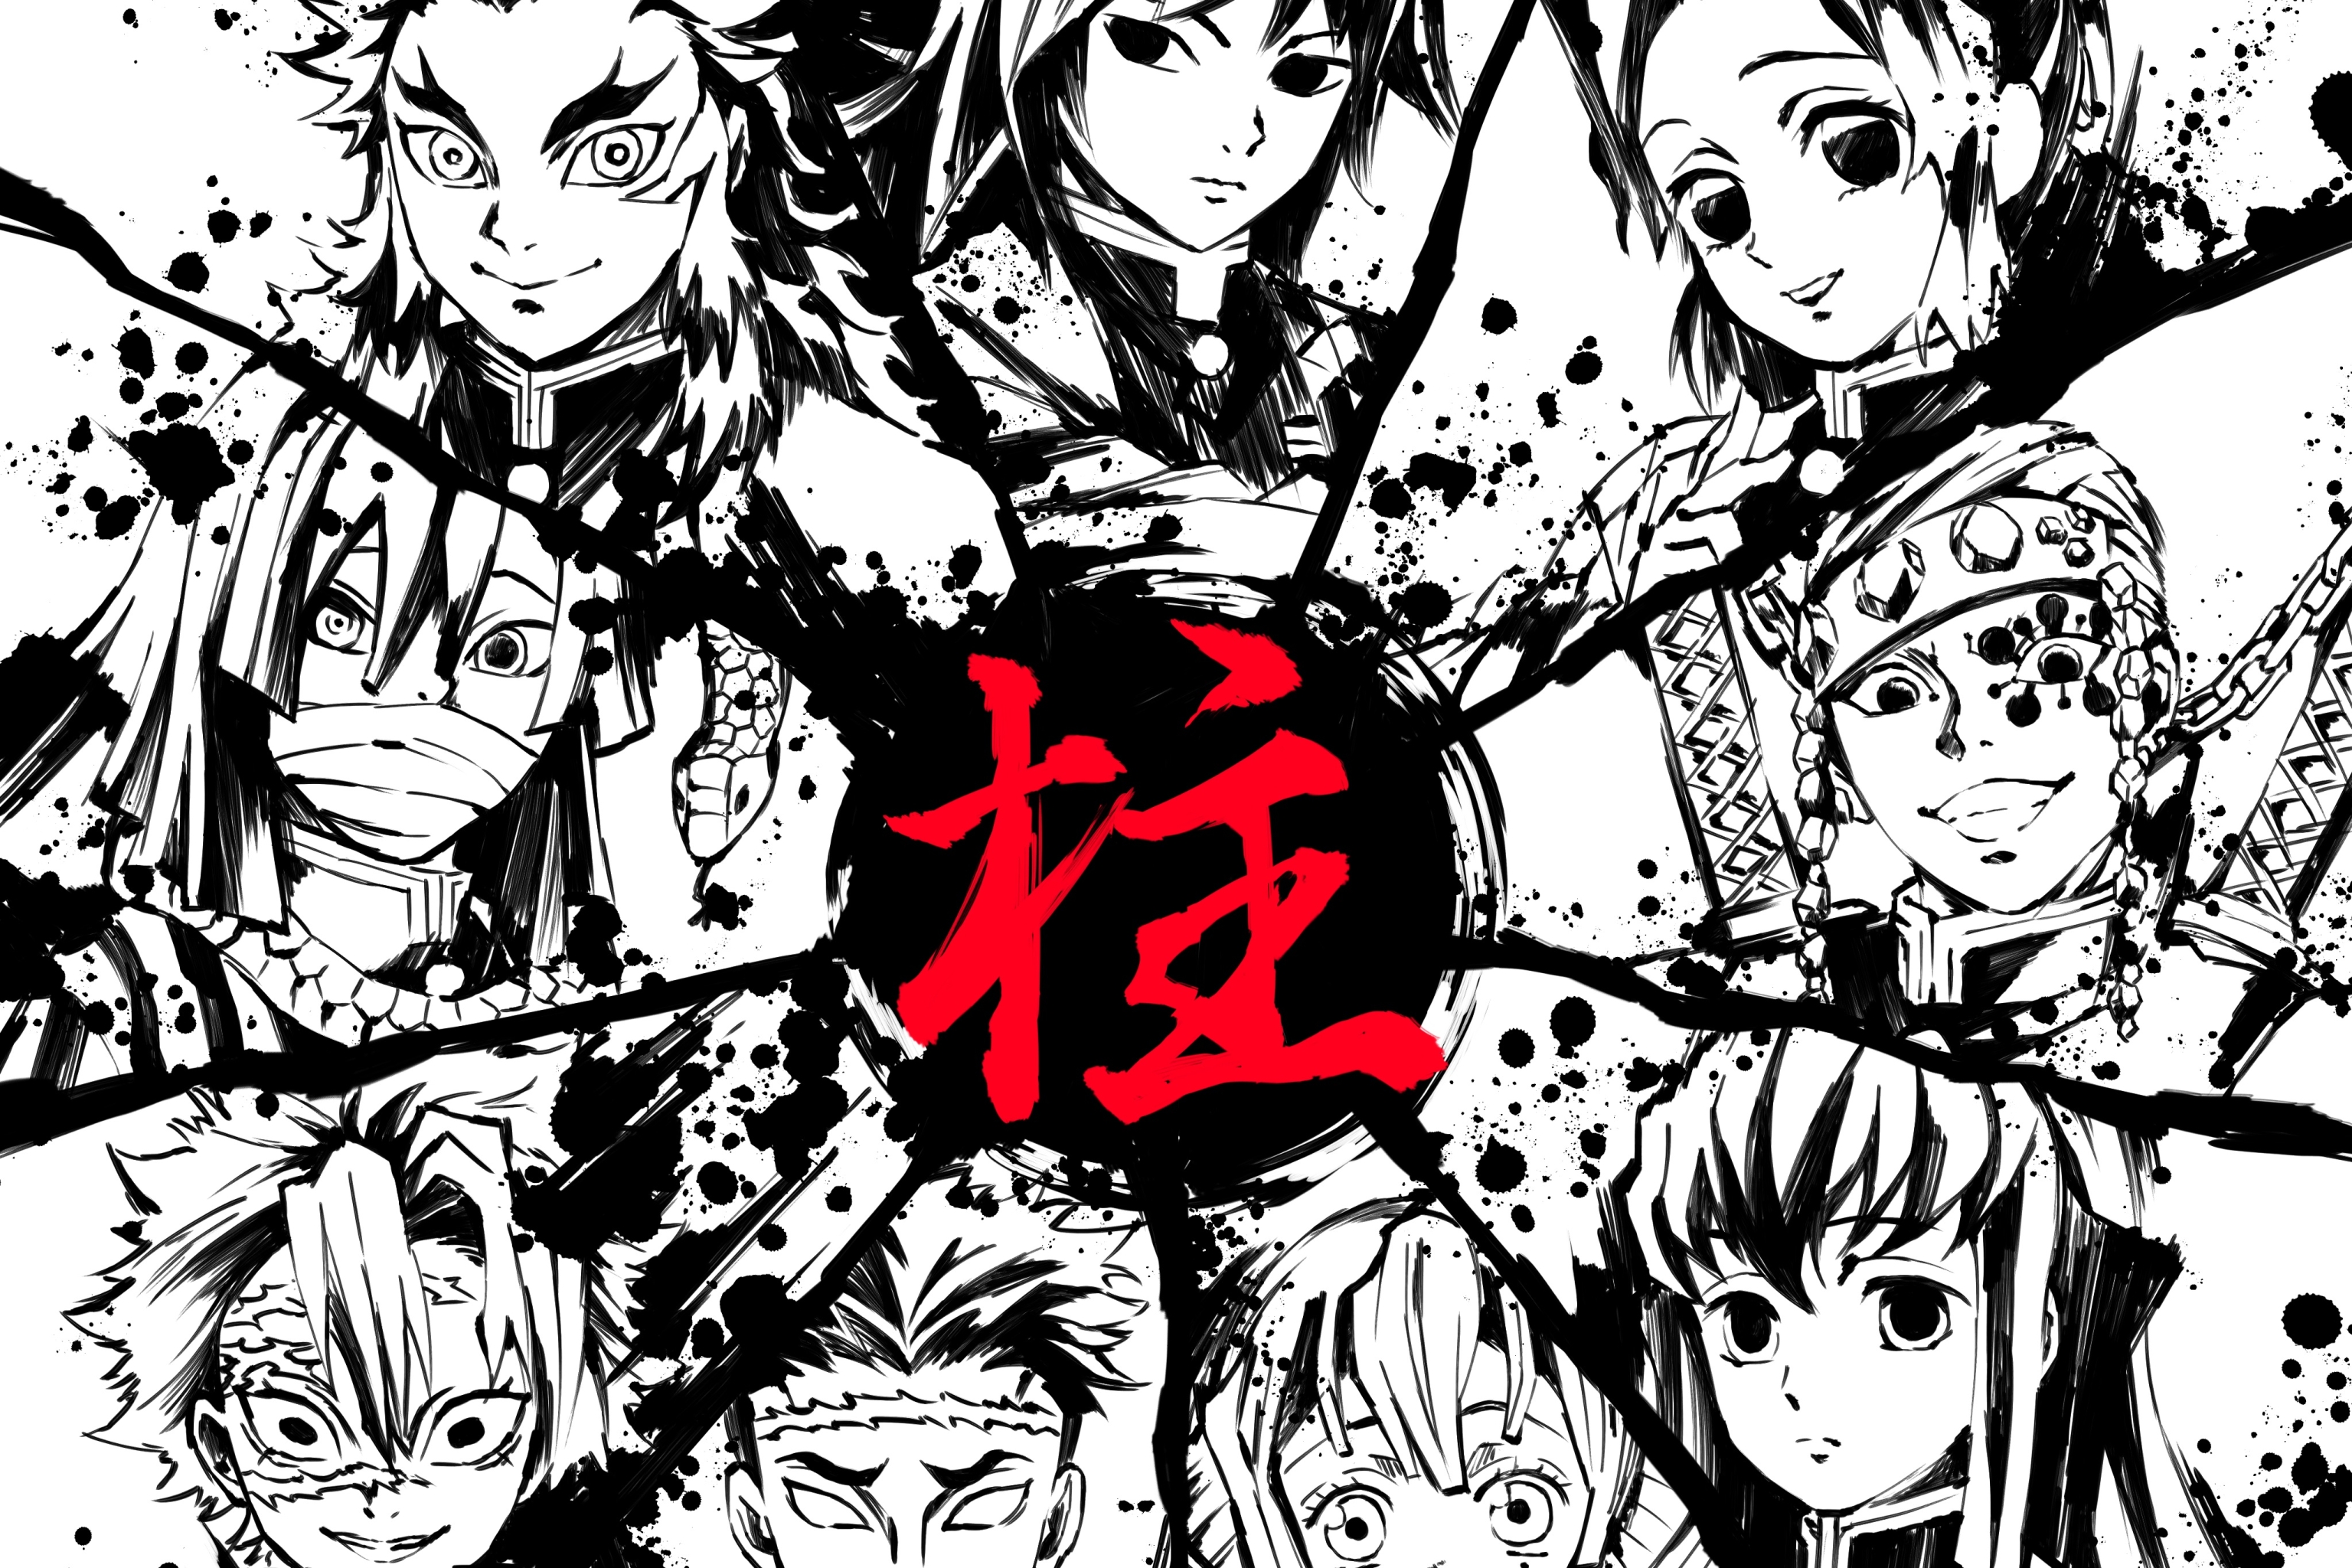 HD wallpaper Anime Demon Slayer Kimetsu no Yaiba  Wallpaper Flare